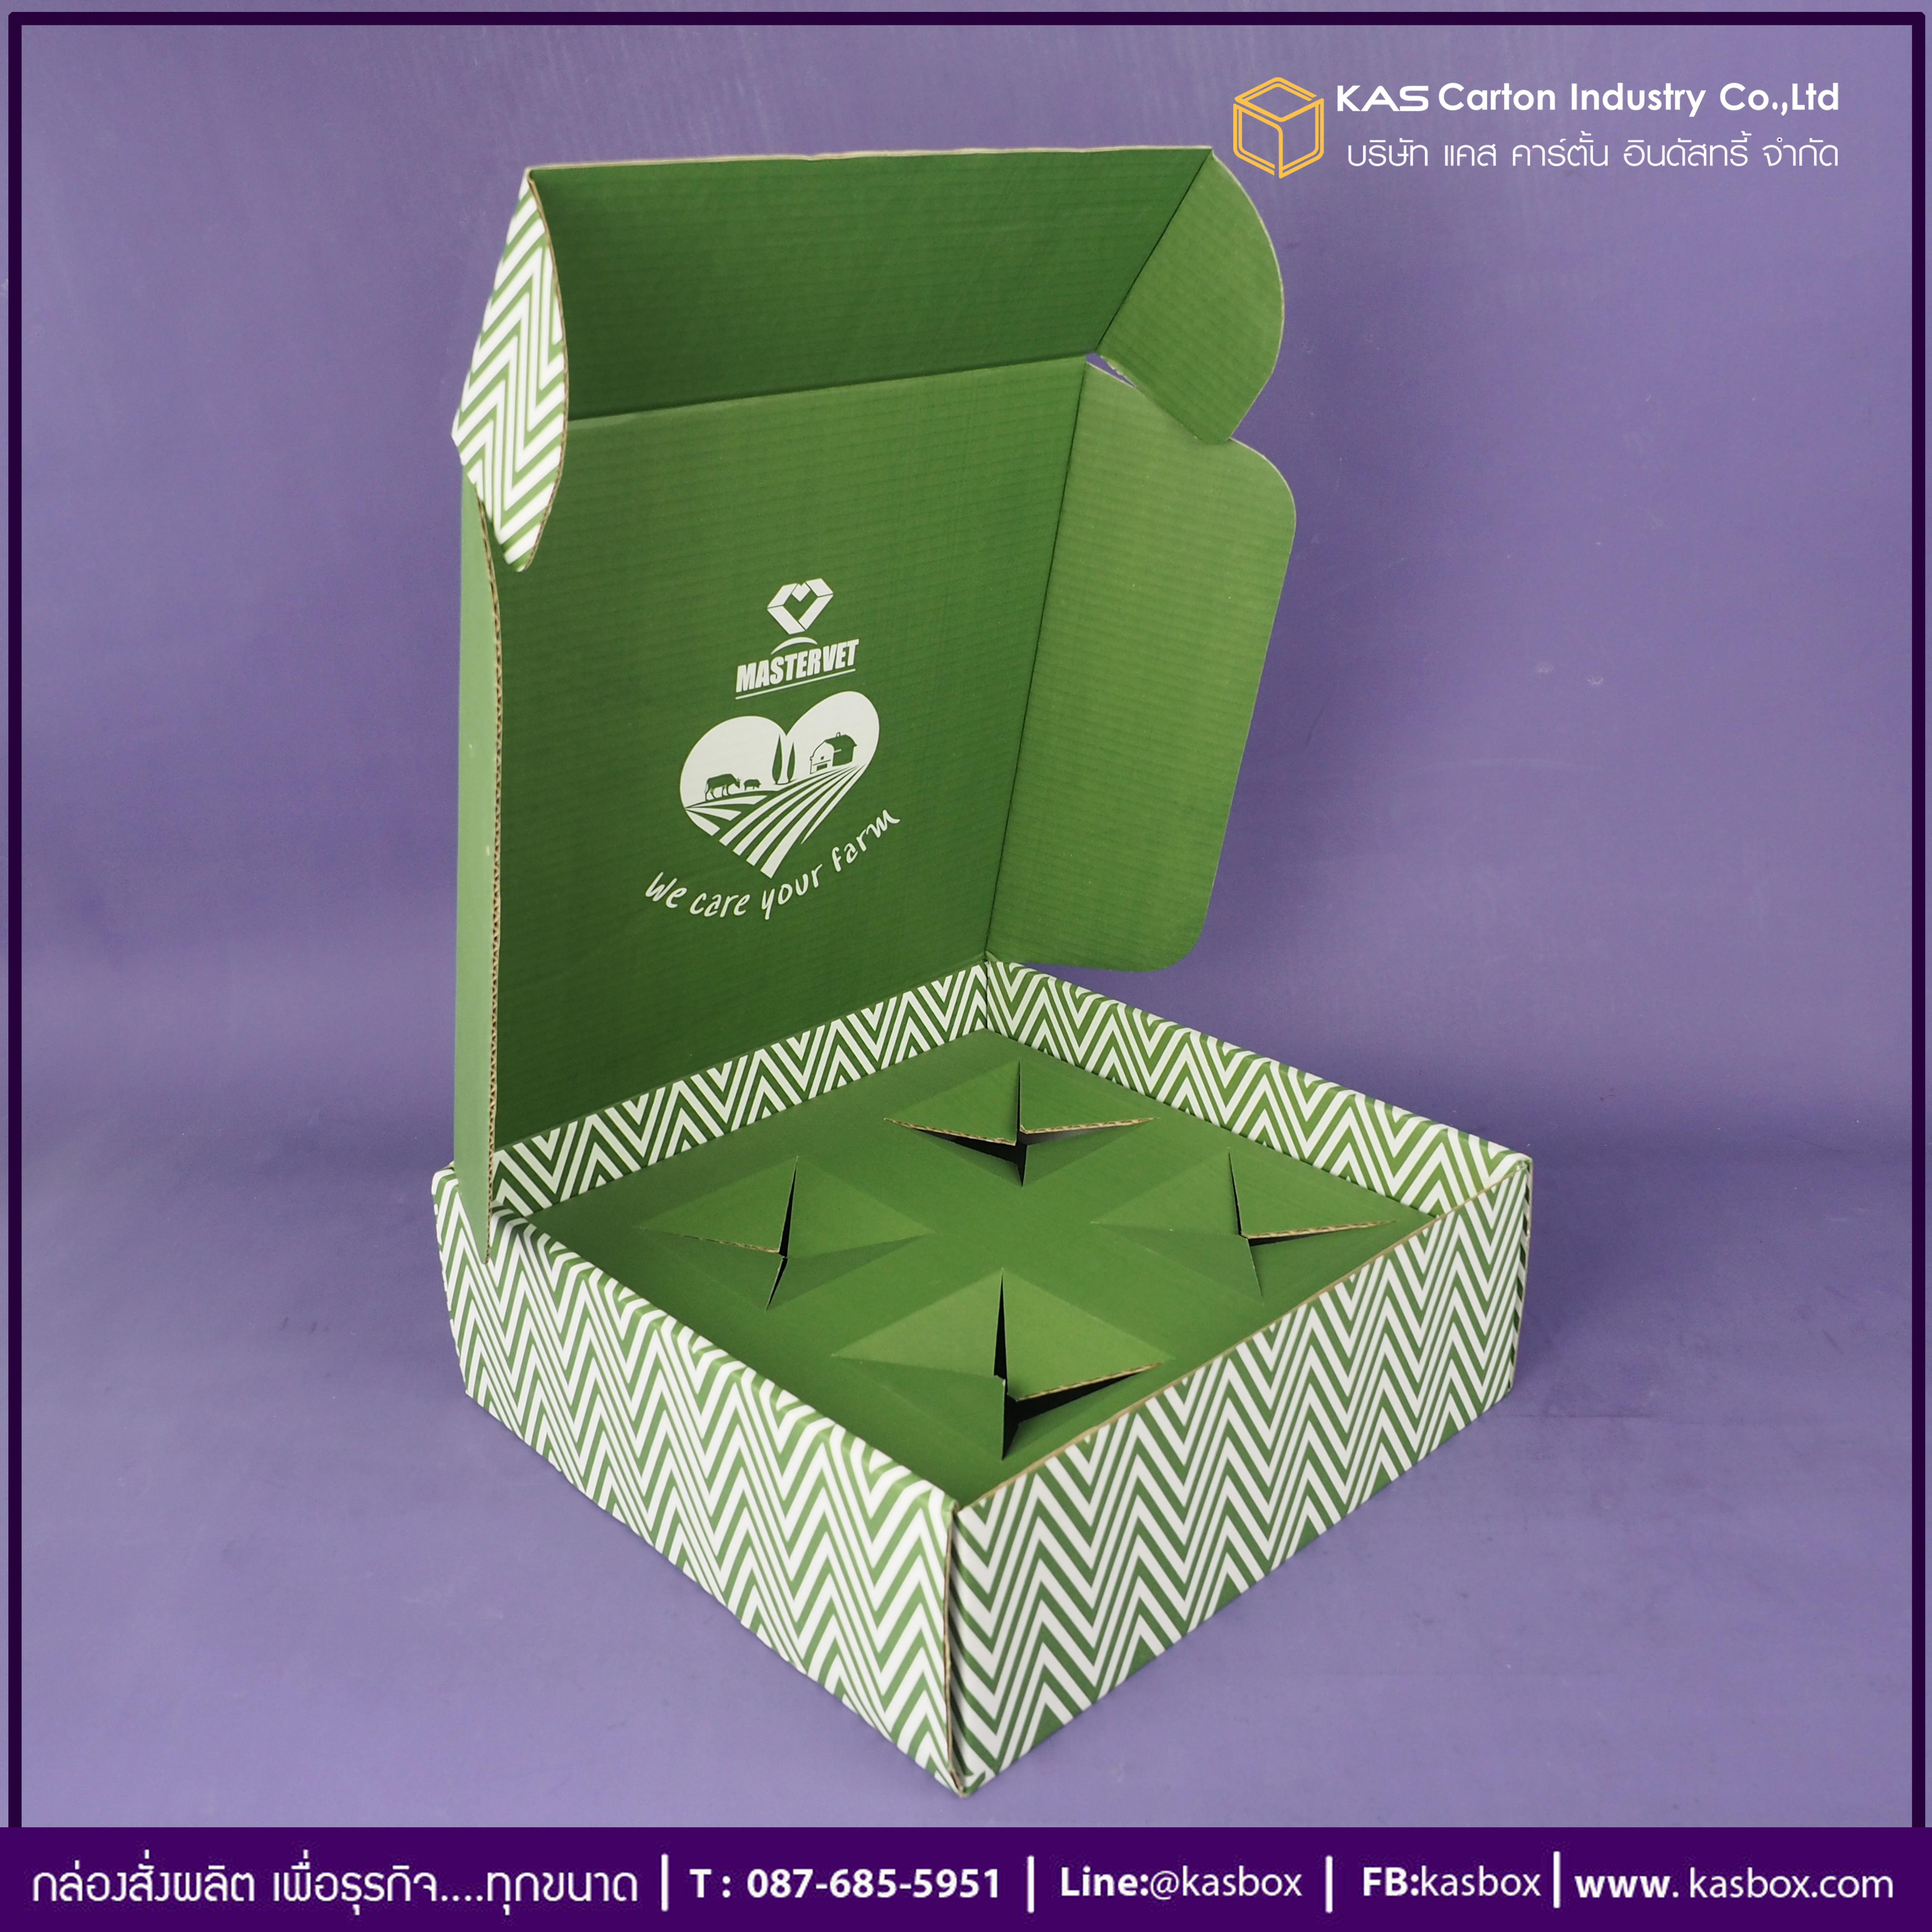 กล่องลูกฟูก สำเร็จรูป และ สั่งผลิต ตามความต้องการลูกค้า กล่องลูกฟูก SME กล่องกระดาษลูกฟูก เพื่อใส่แก้วกาแฟ Mastervet